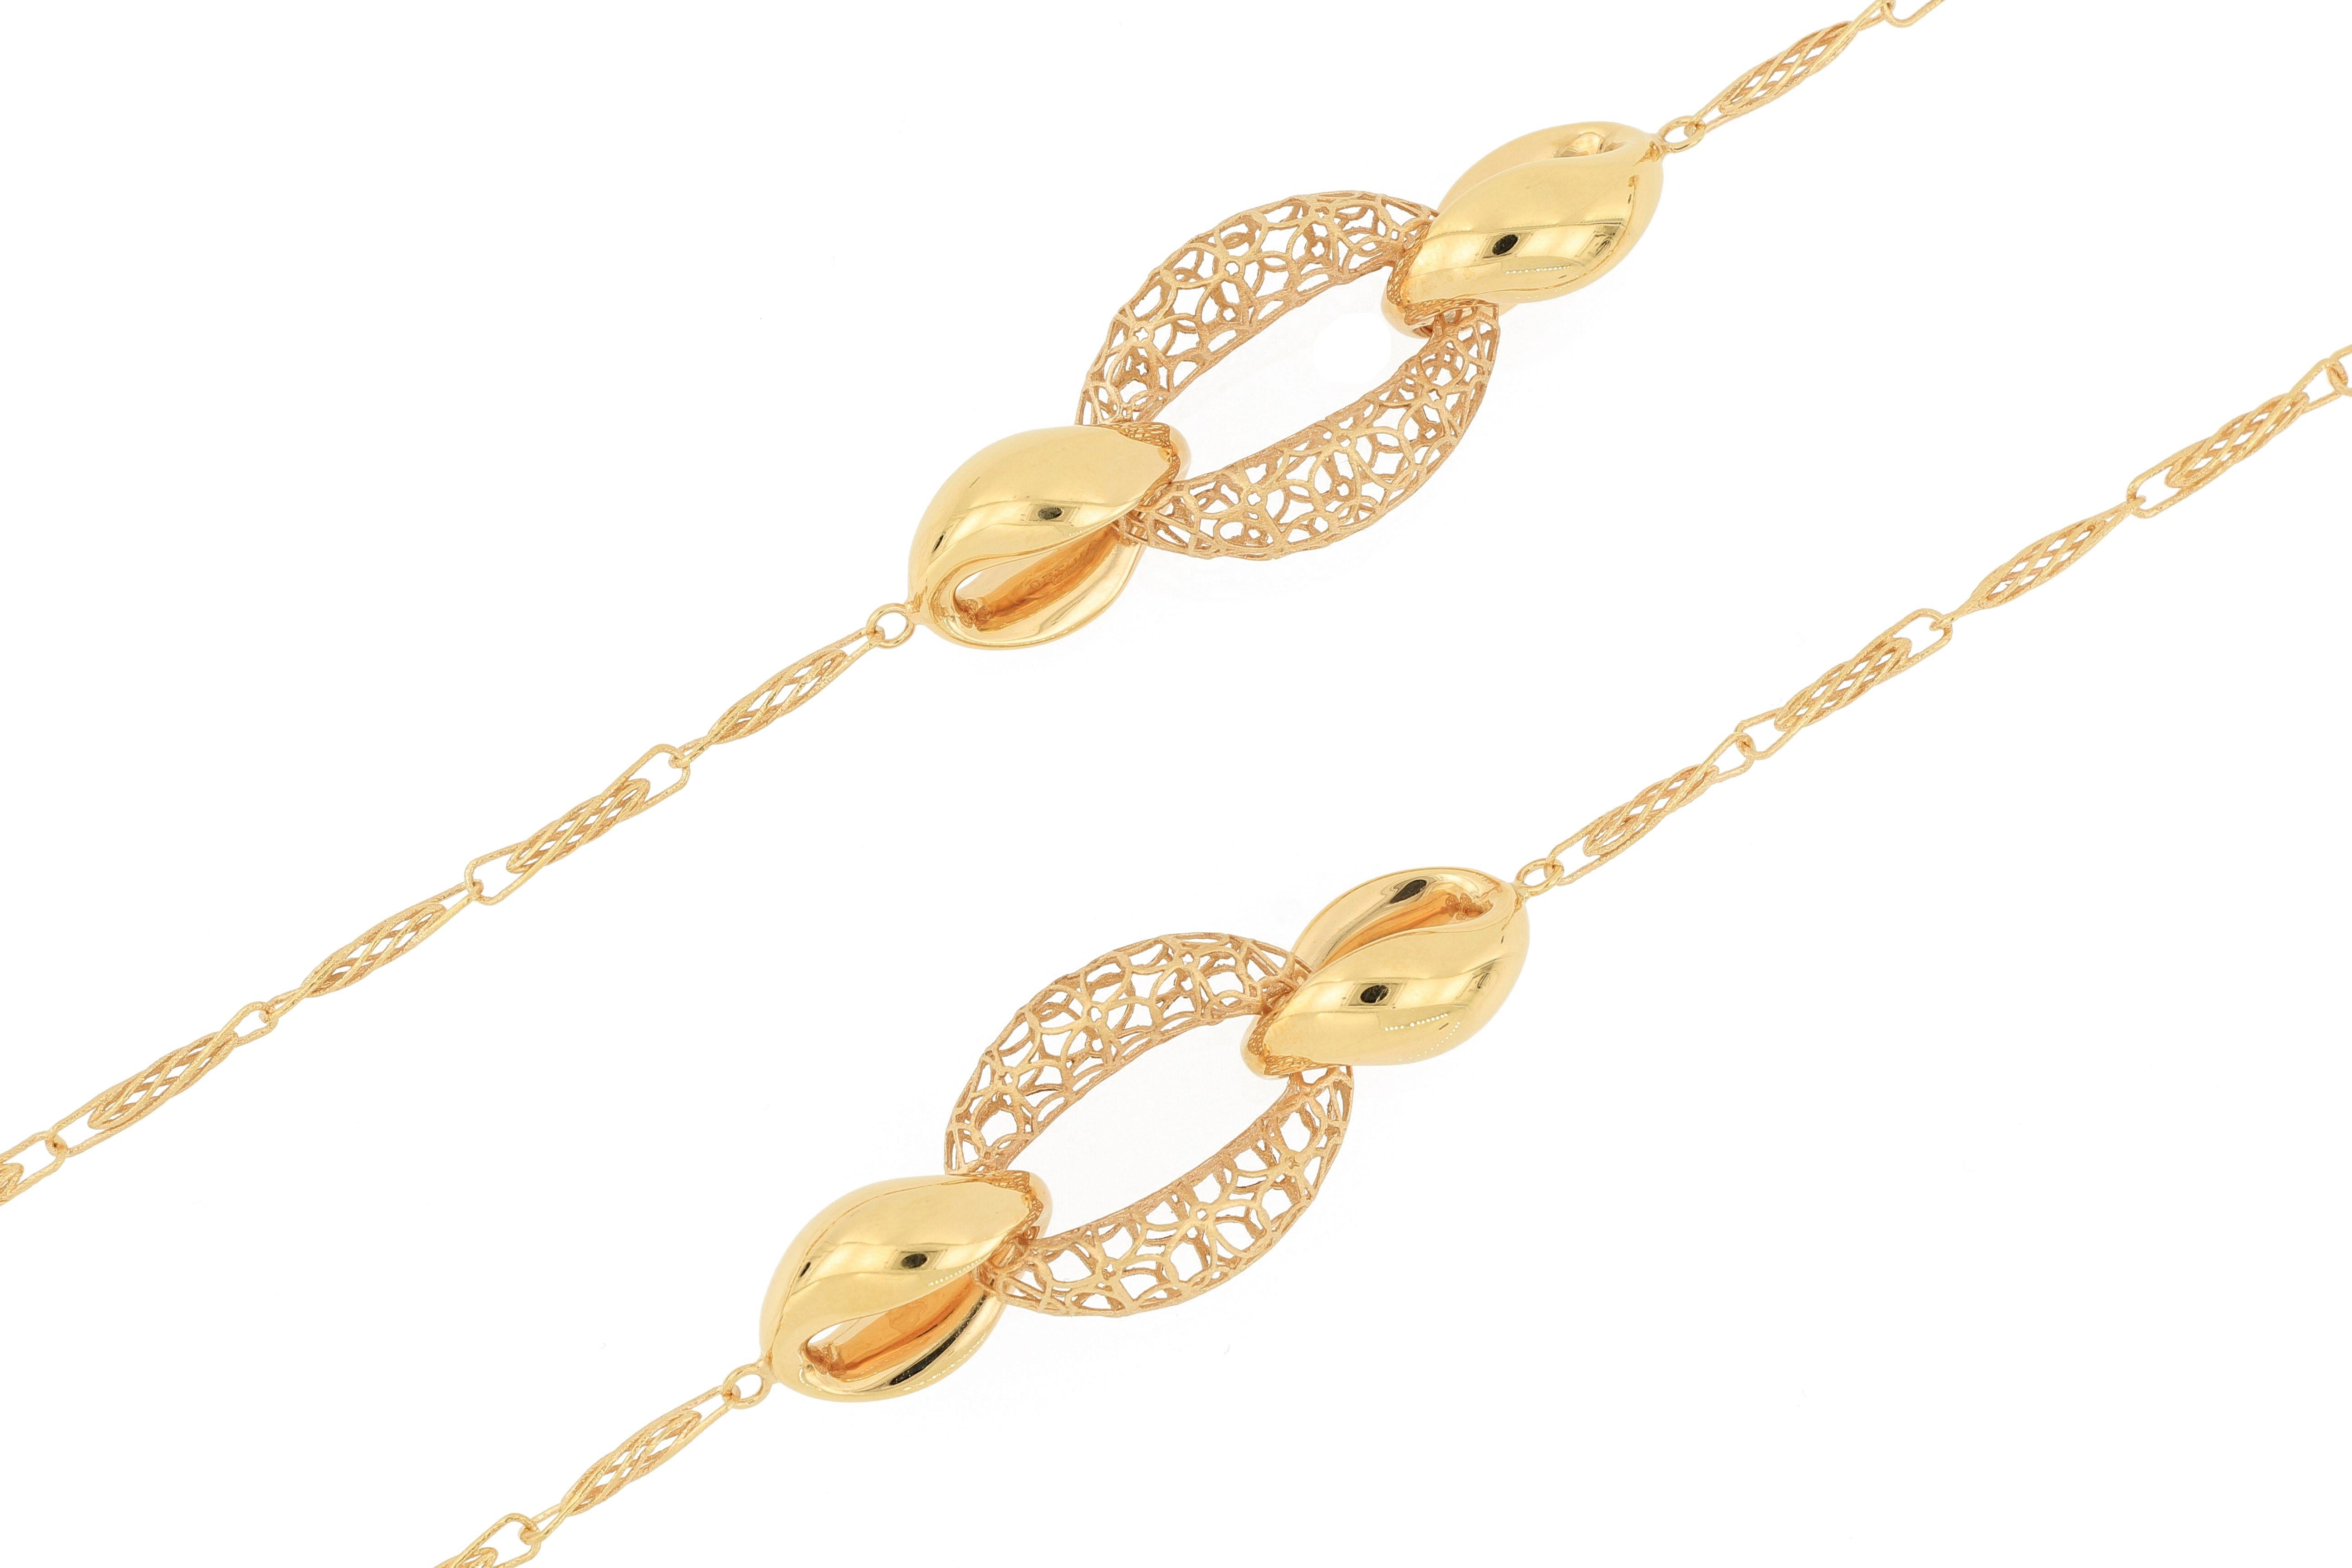 Diese Halskette aus 18 Karat Gold ist in Italien hergestellt, mit exquisiter Handwerkskunst, ausgehöhlt und wunderschön gestaltet. Der gesamte Kettenkörper ist mit einer detaillierten Struktur verzahnt.  Diese kombinierbare Halskette ist einfach ein